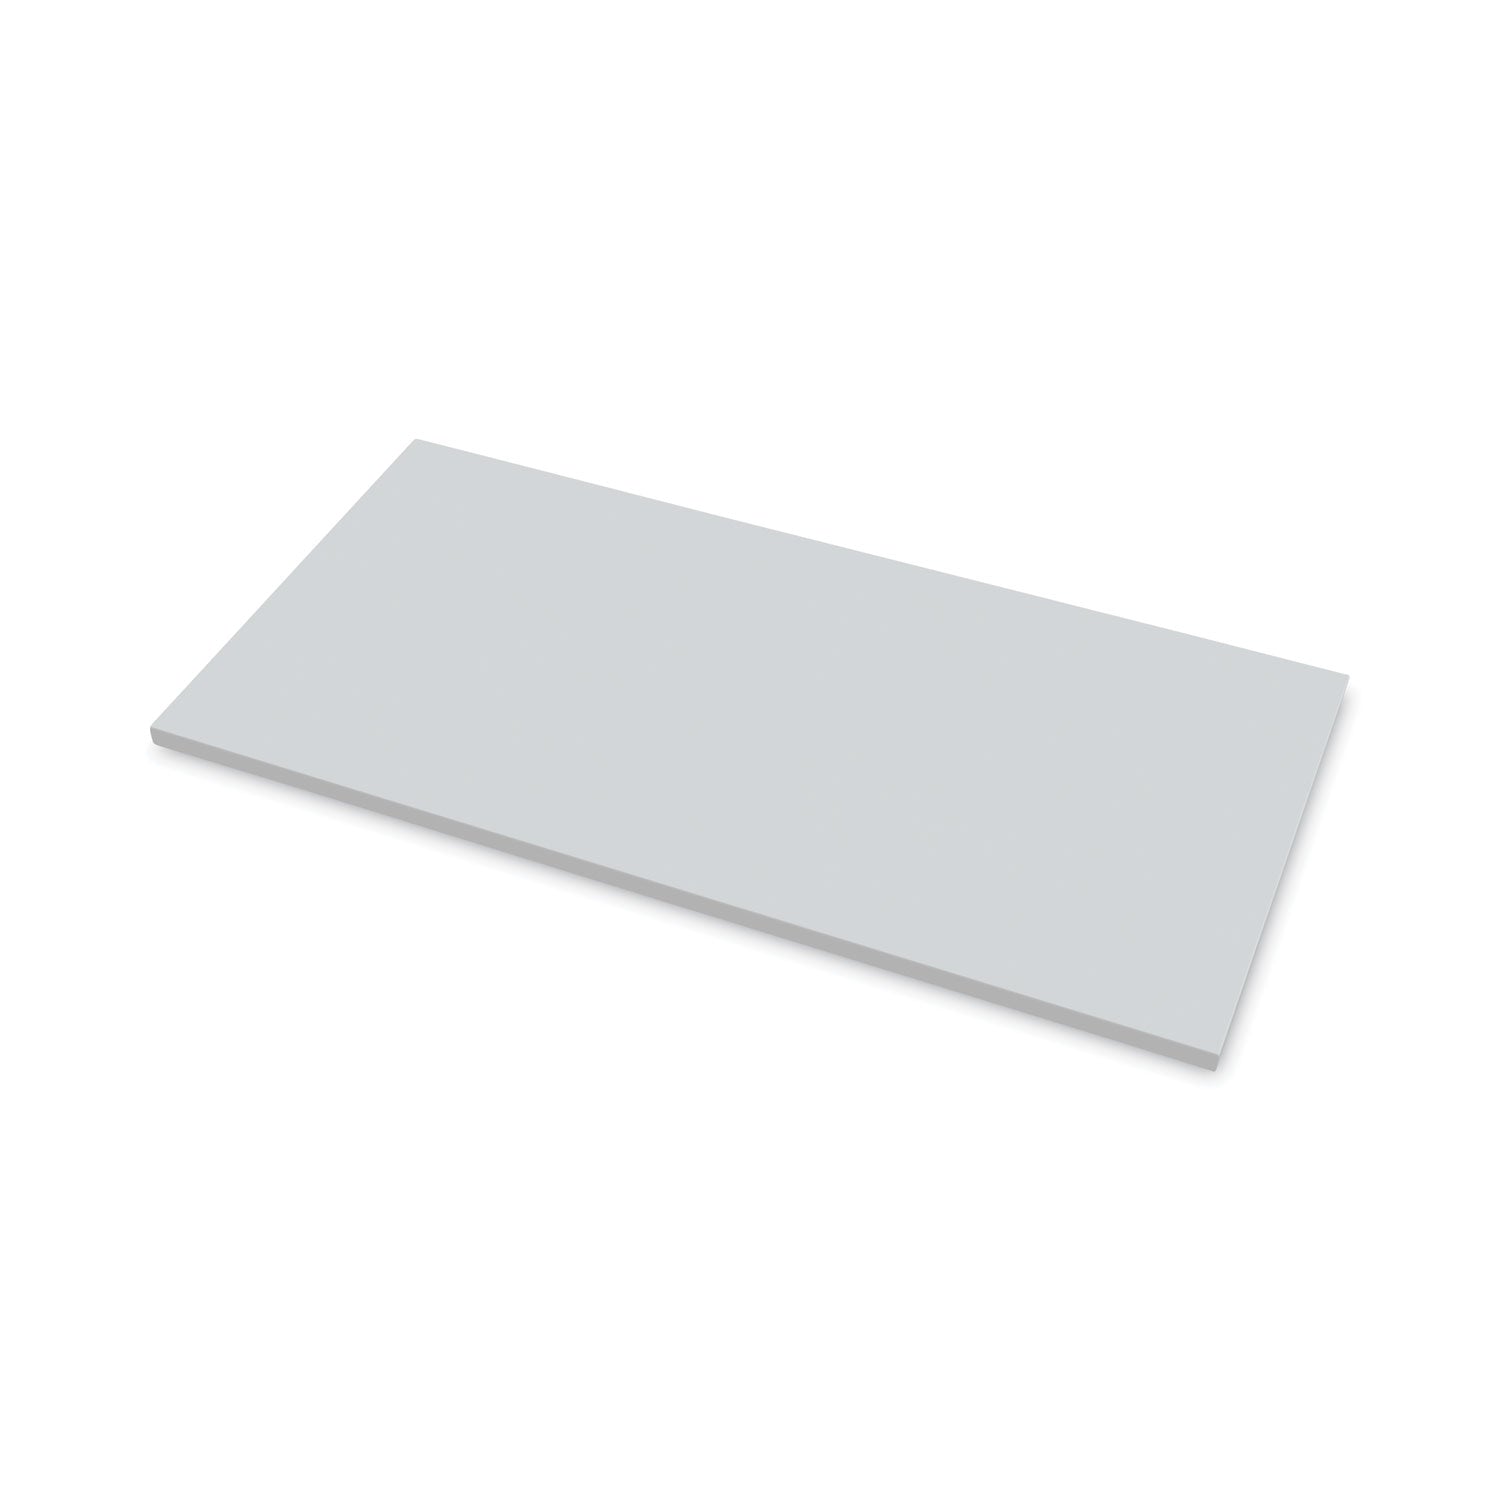 levado-laminate-table-top-48-x-24-gray_fel9649401 - 1